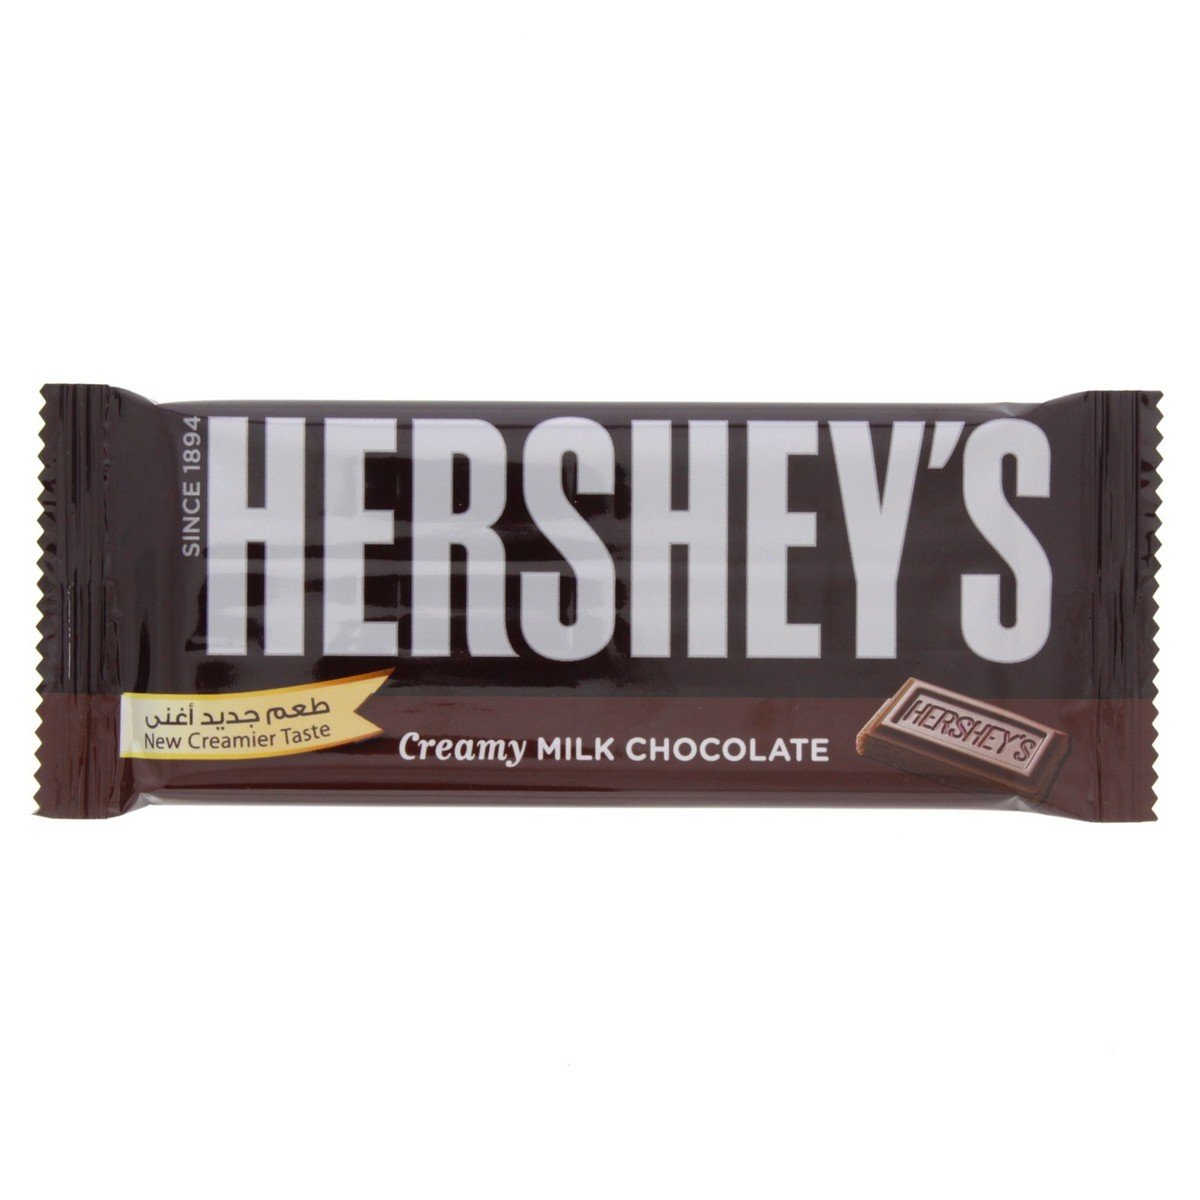 Buy Hersheys Creamy Milk Chocolate 40 g Online at Best Price | Covrd Choco.Bars&Tab | Lulu KSA in Saudi Arabia